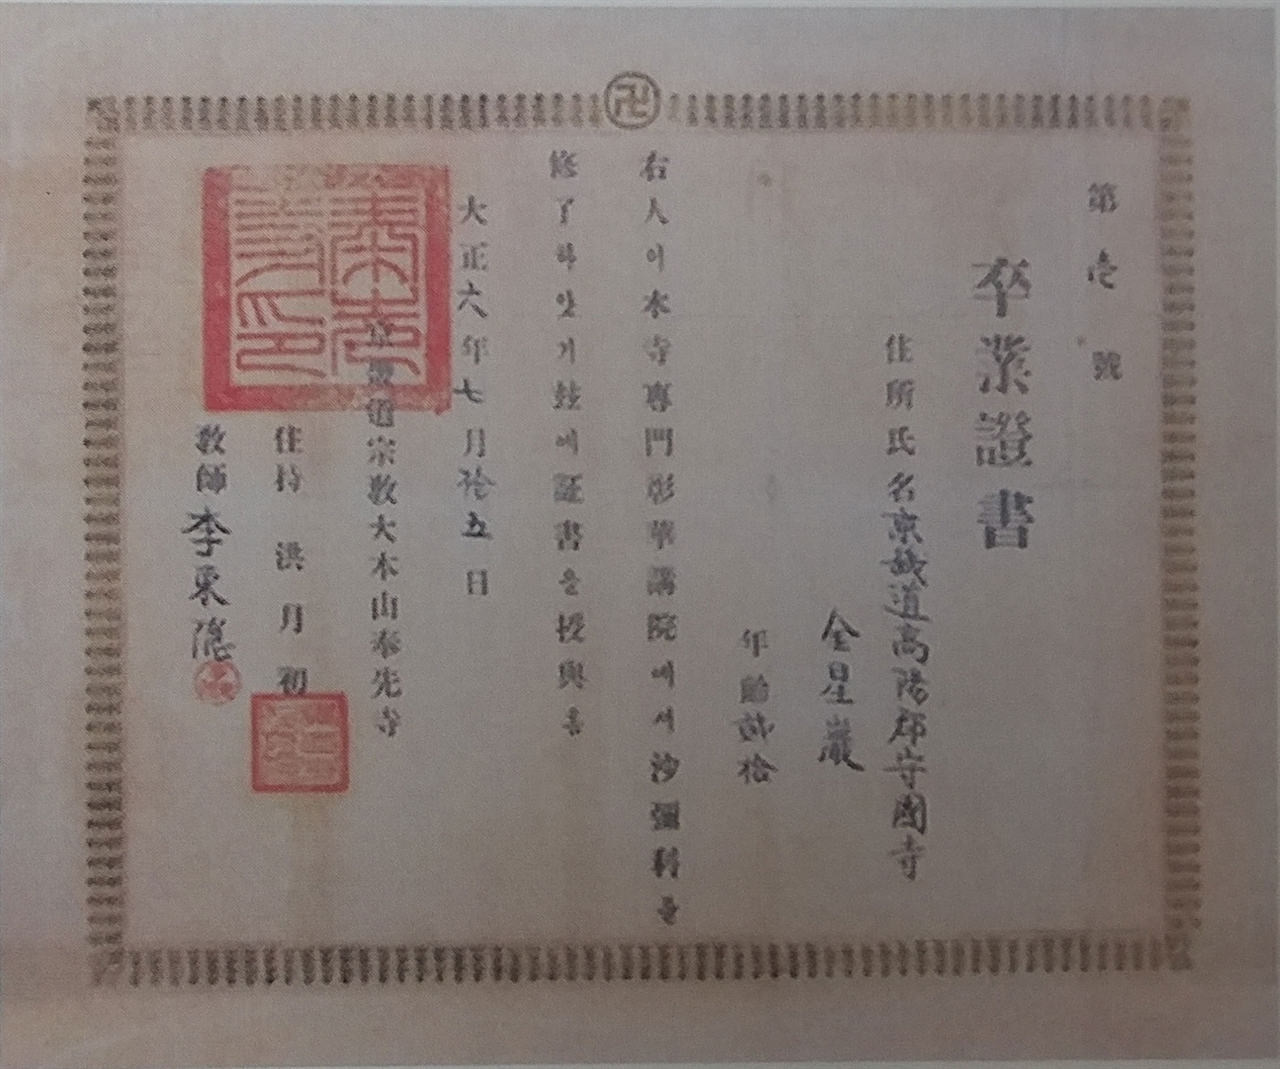 김성숙 봉선사 전문창화강원 사미과 졸업증서 (1917. 7.15)